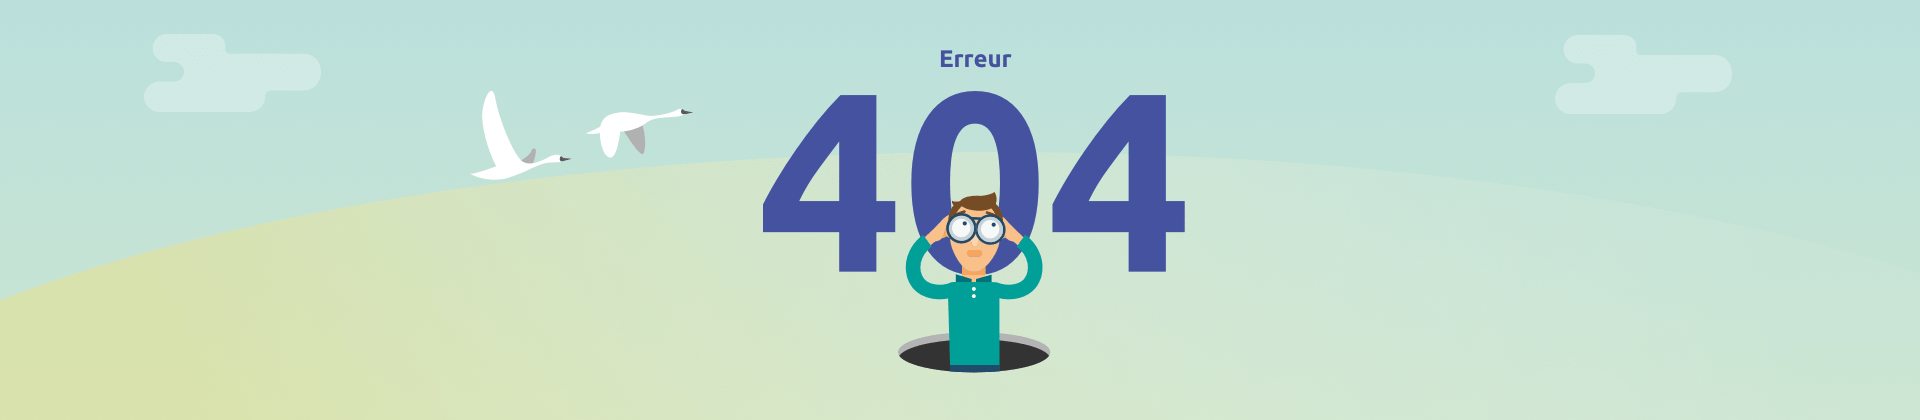 Visuel 404